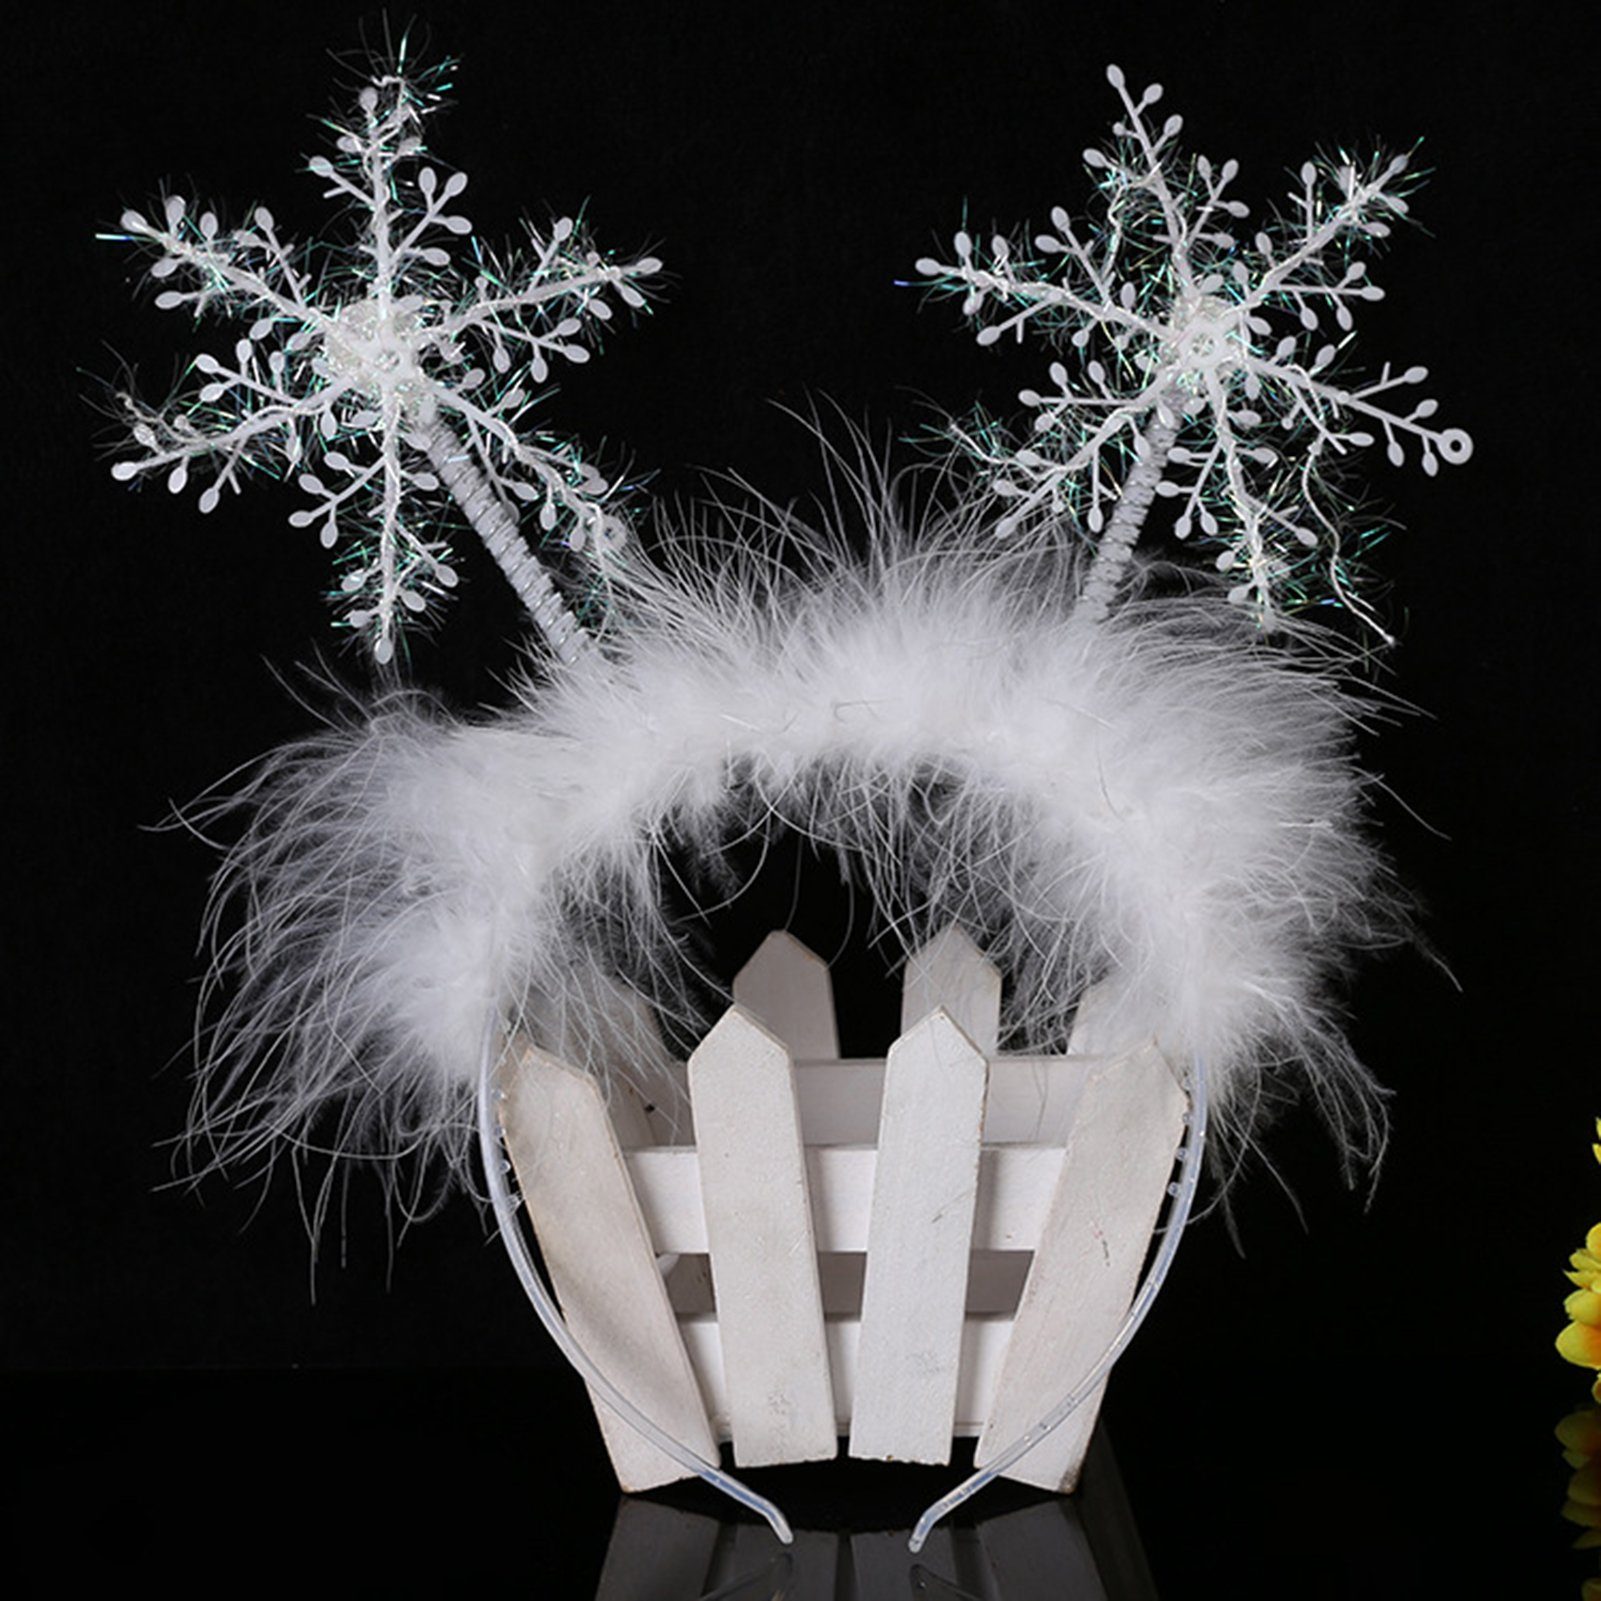 Rutaqian Weihnachten Plüsch-Weihnachtsstirnband Kopfbedeckung Niedliche Schneeflocken-Mädchen-Weihnachtskopfschmuck, Haarband Schneeflocke Party-Requisiten Haarband,